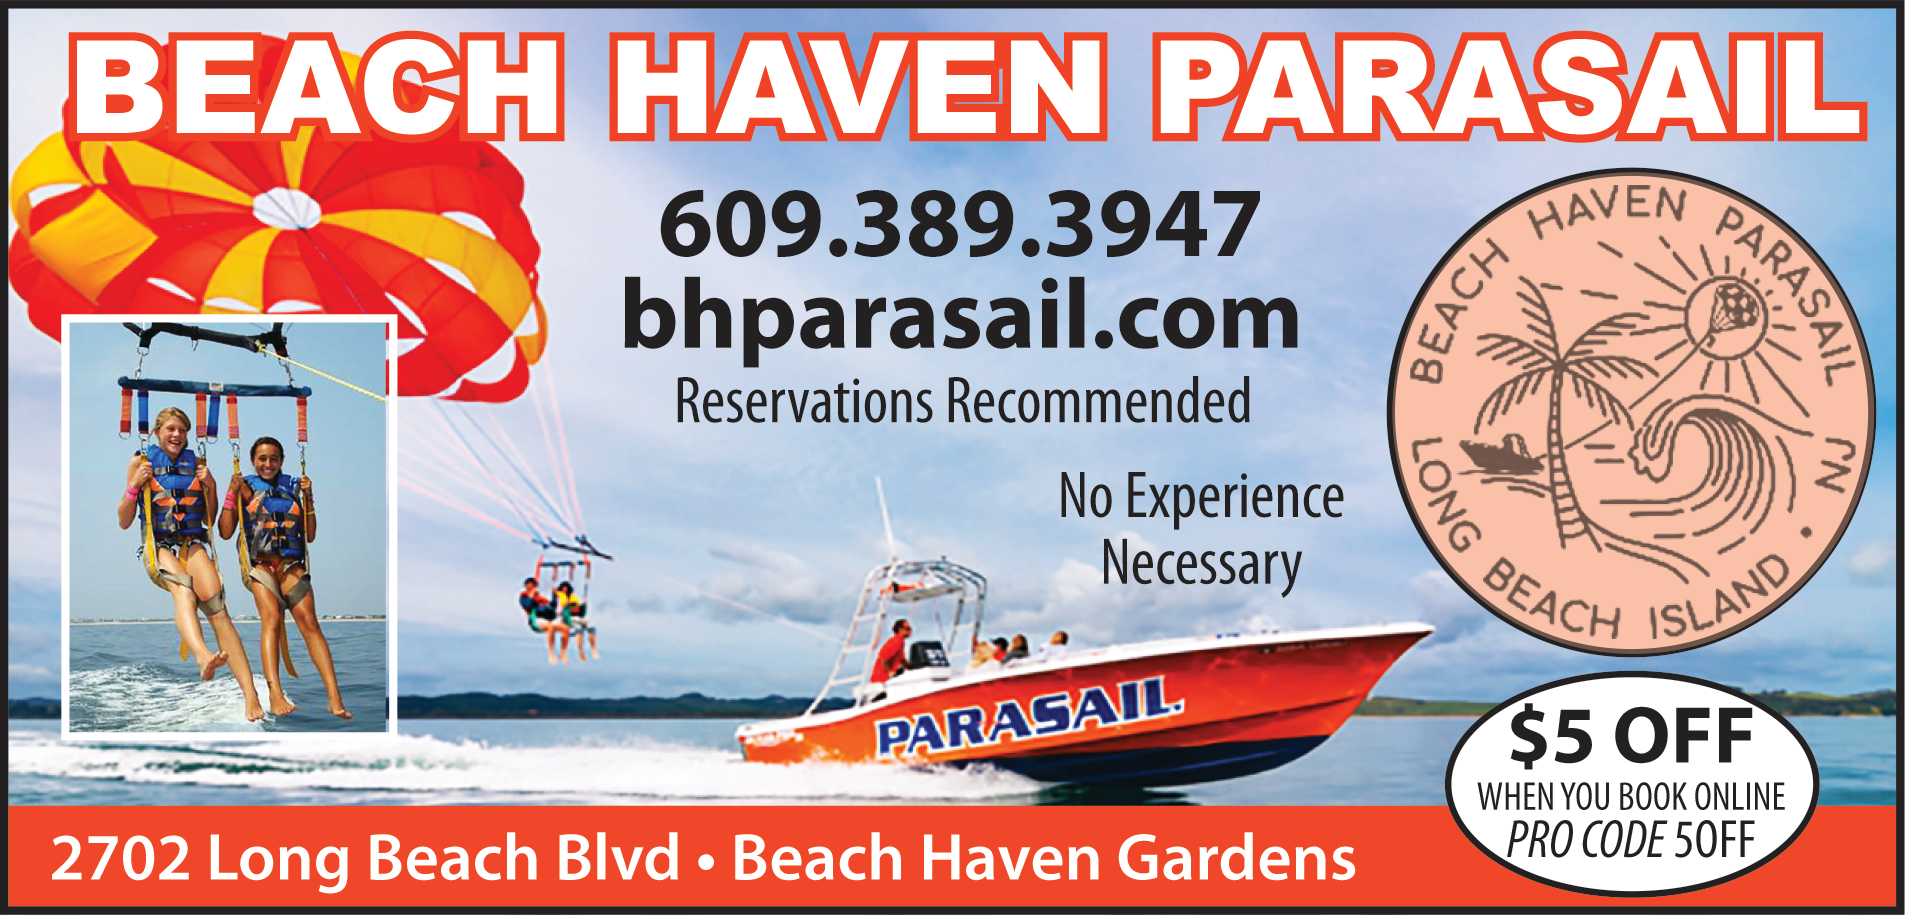 Beach Haven Parasail Print Ad